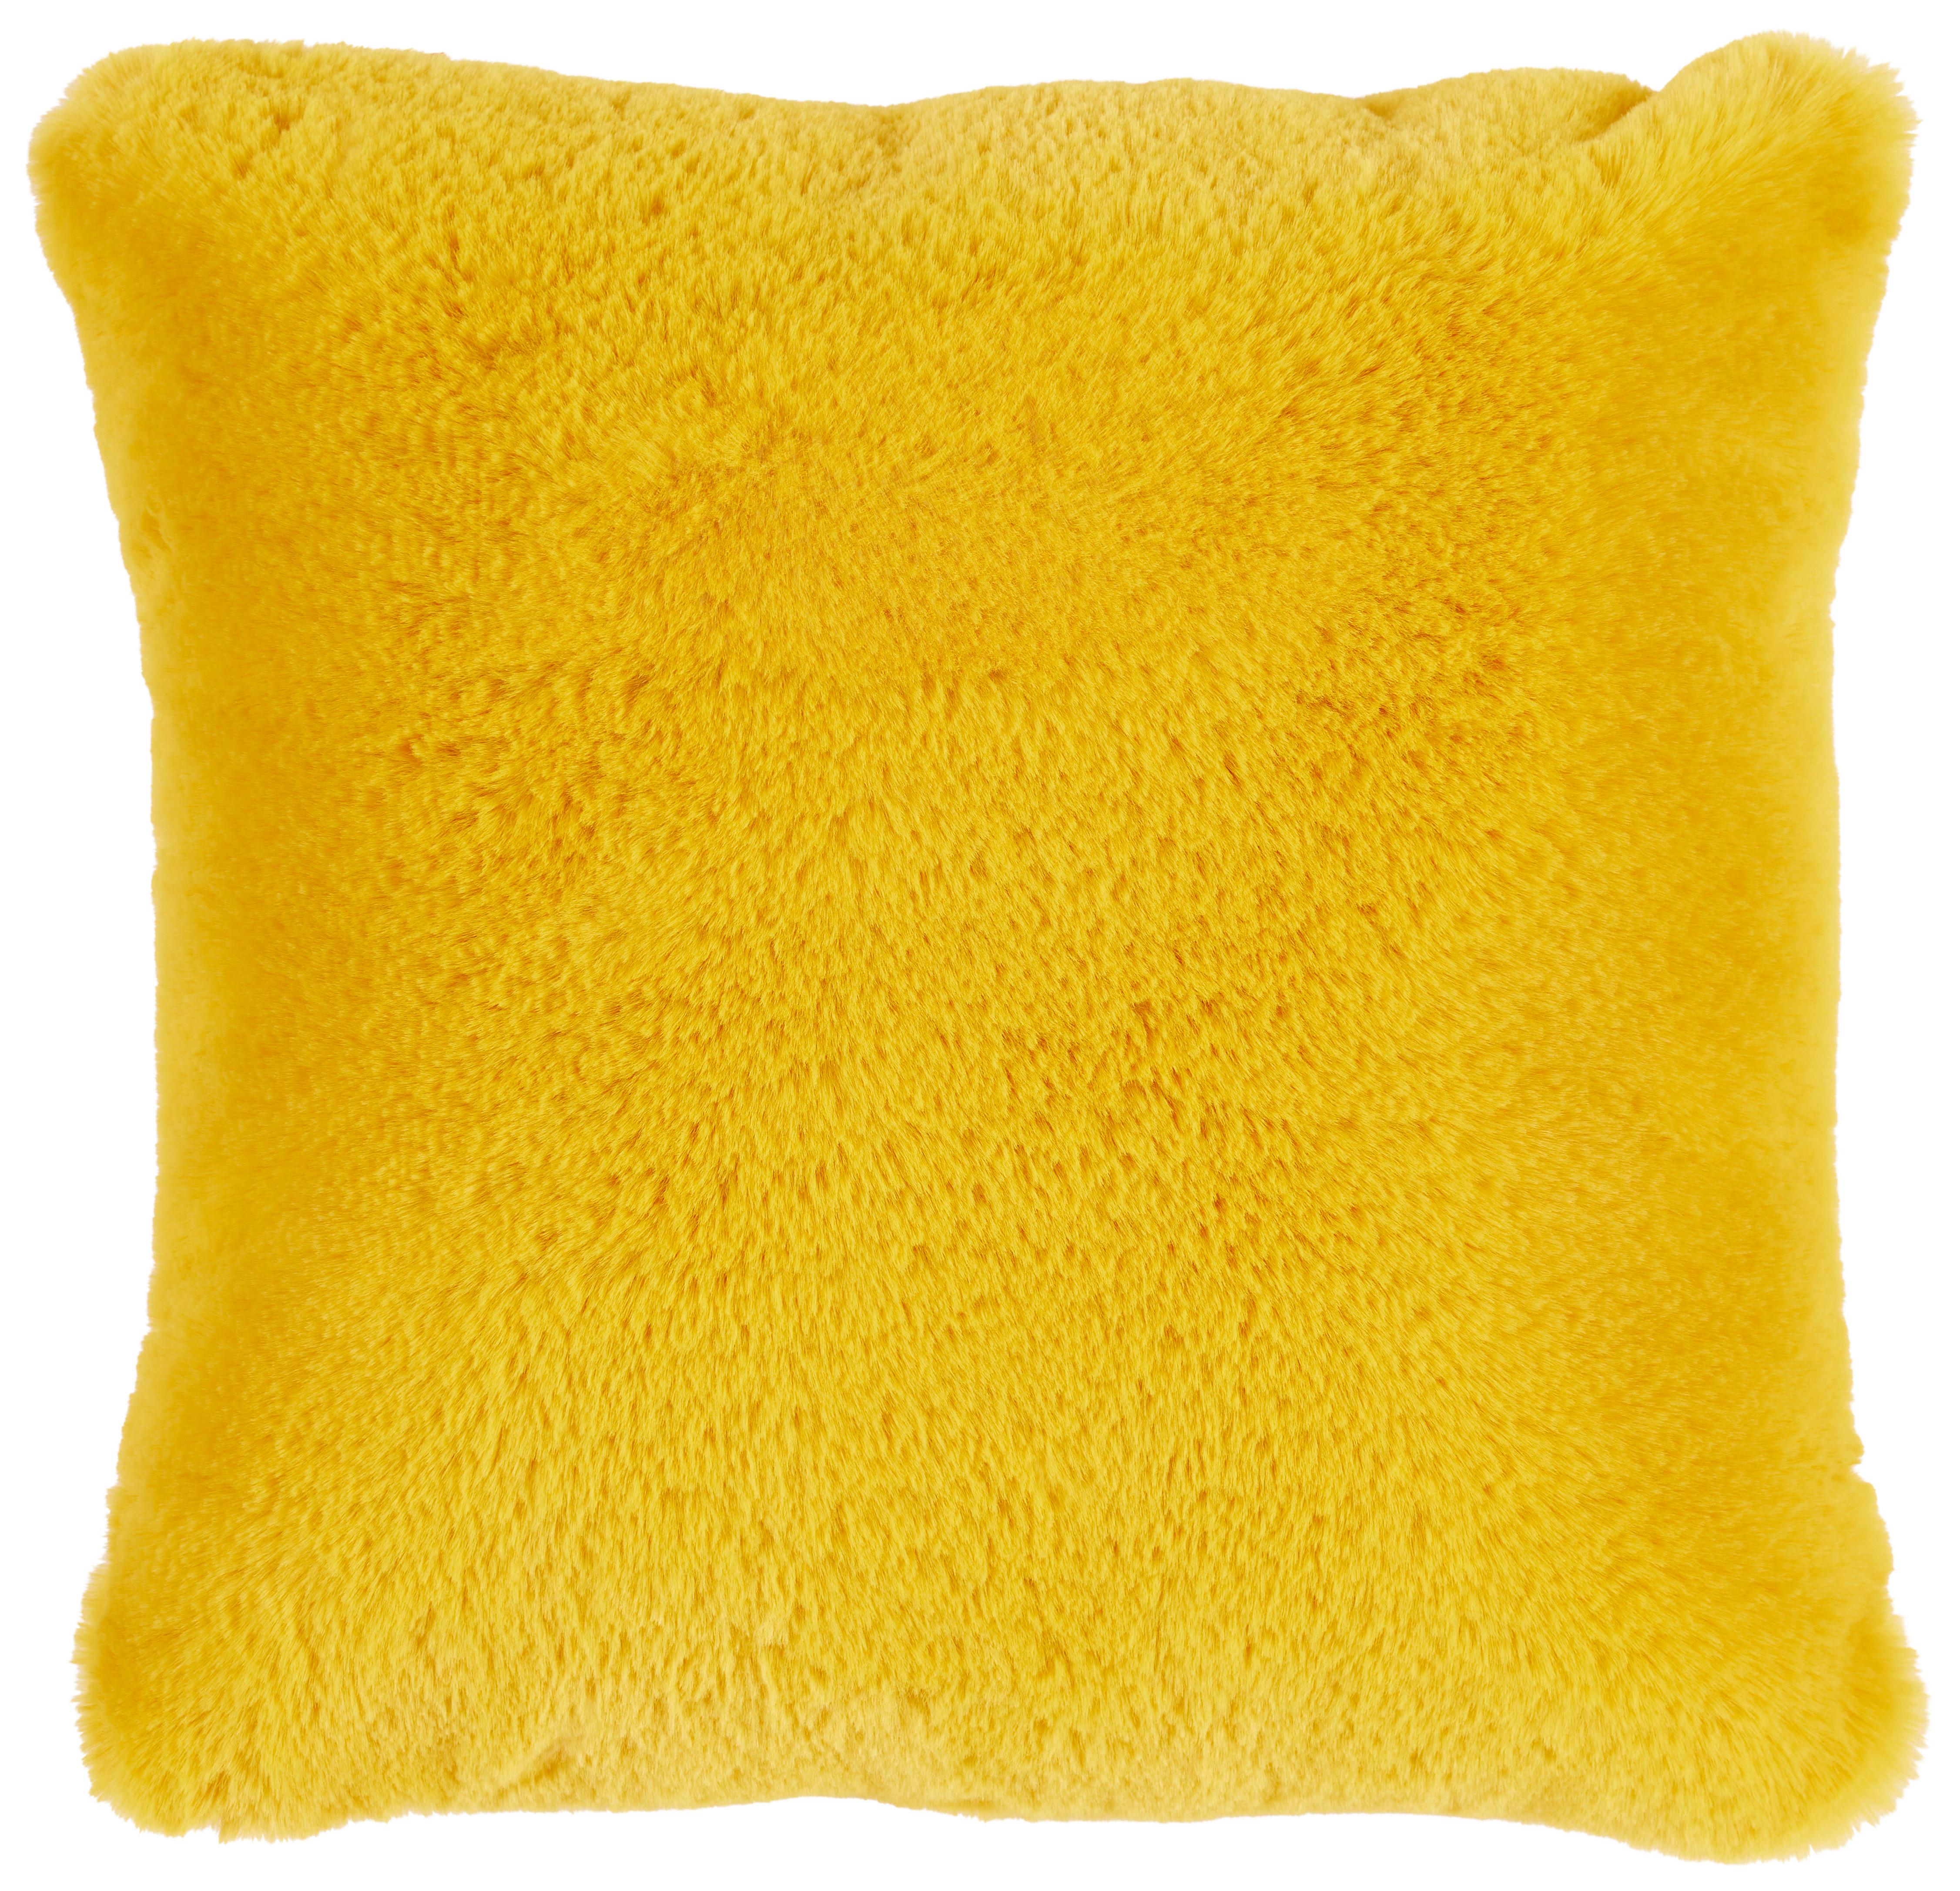 PODUSZKA FUTRZANA LIZ - żółty, Modern, tkanina (45/45cm) - Premium Living